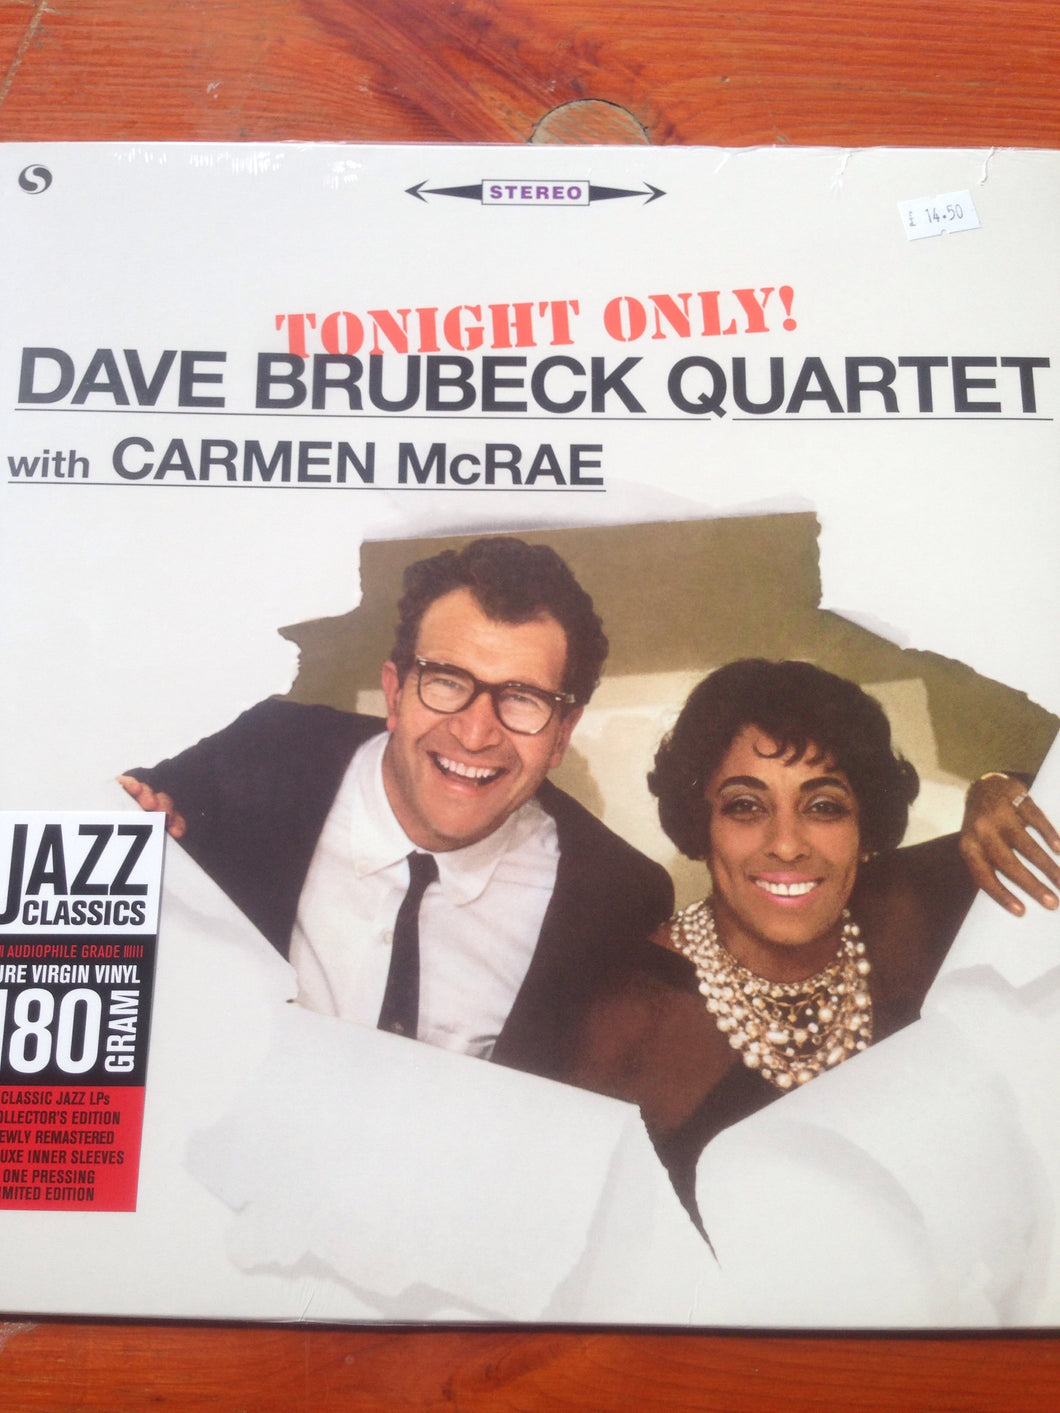 Dave Brubeck Quartet with Carmen Mcrae